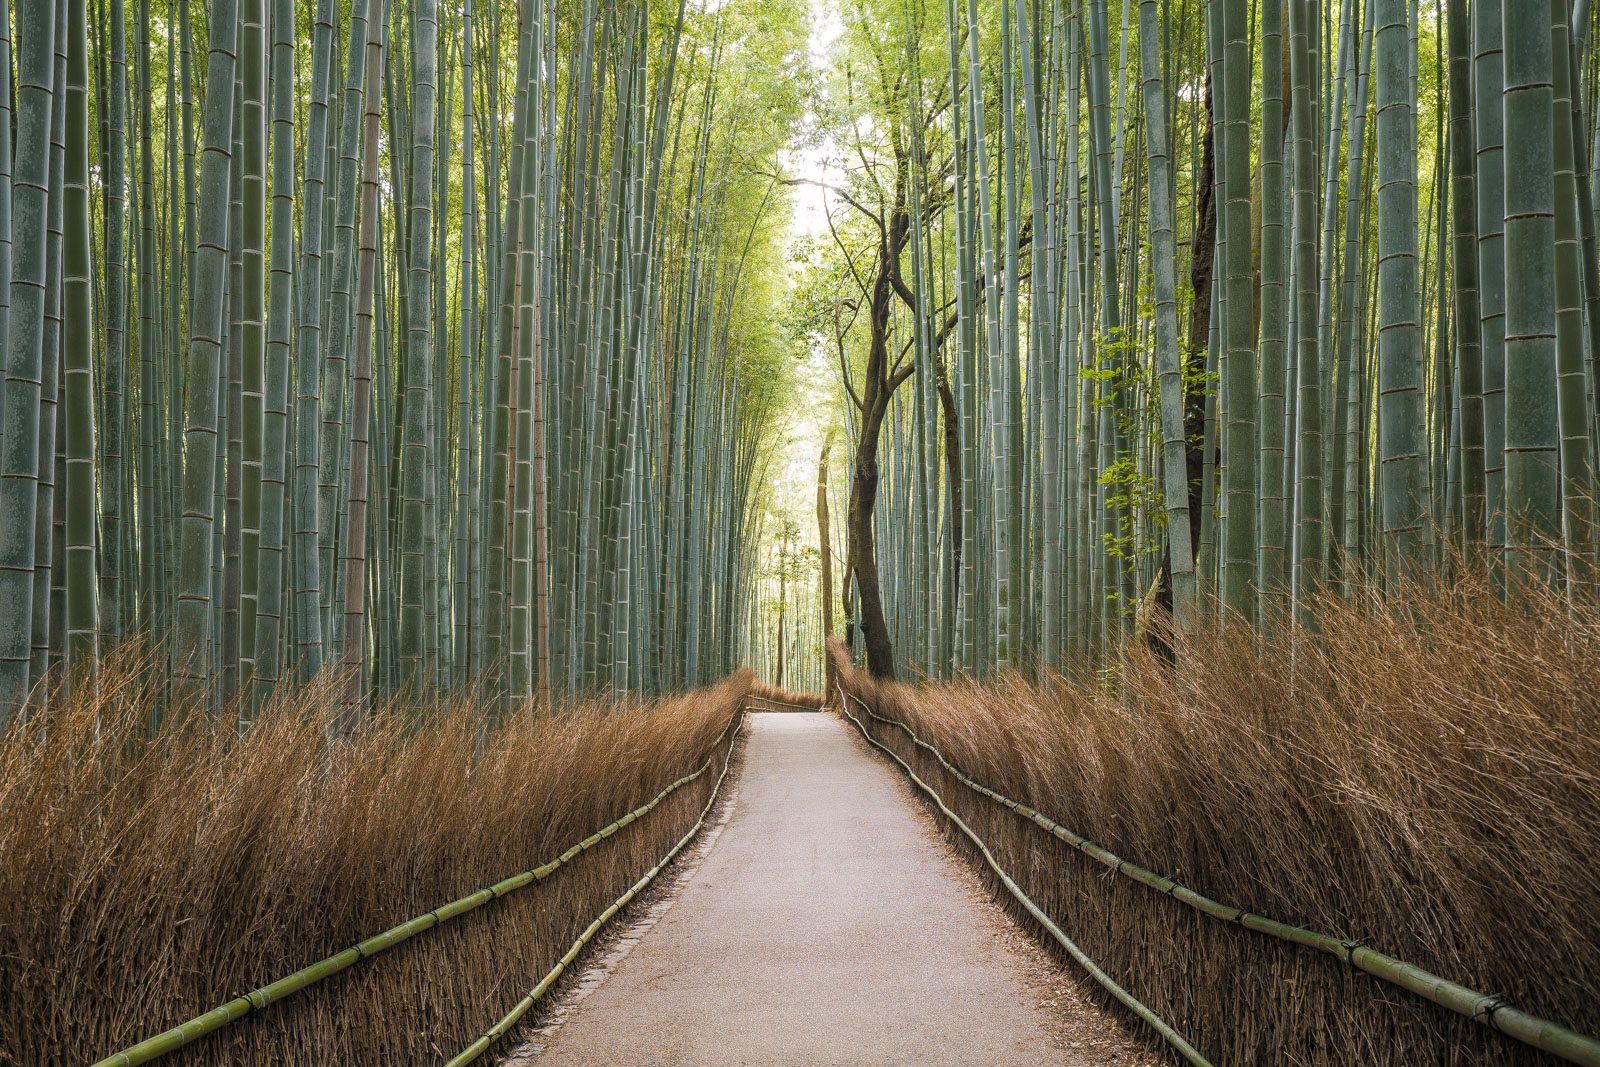 Sagano Bamboo Forest, Kyoto, Japan